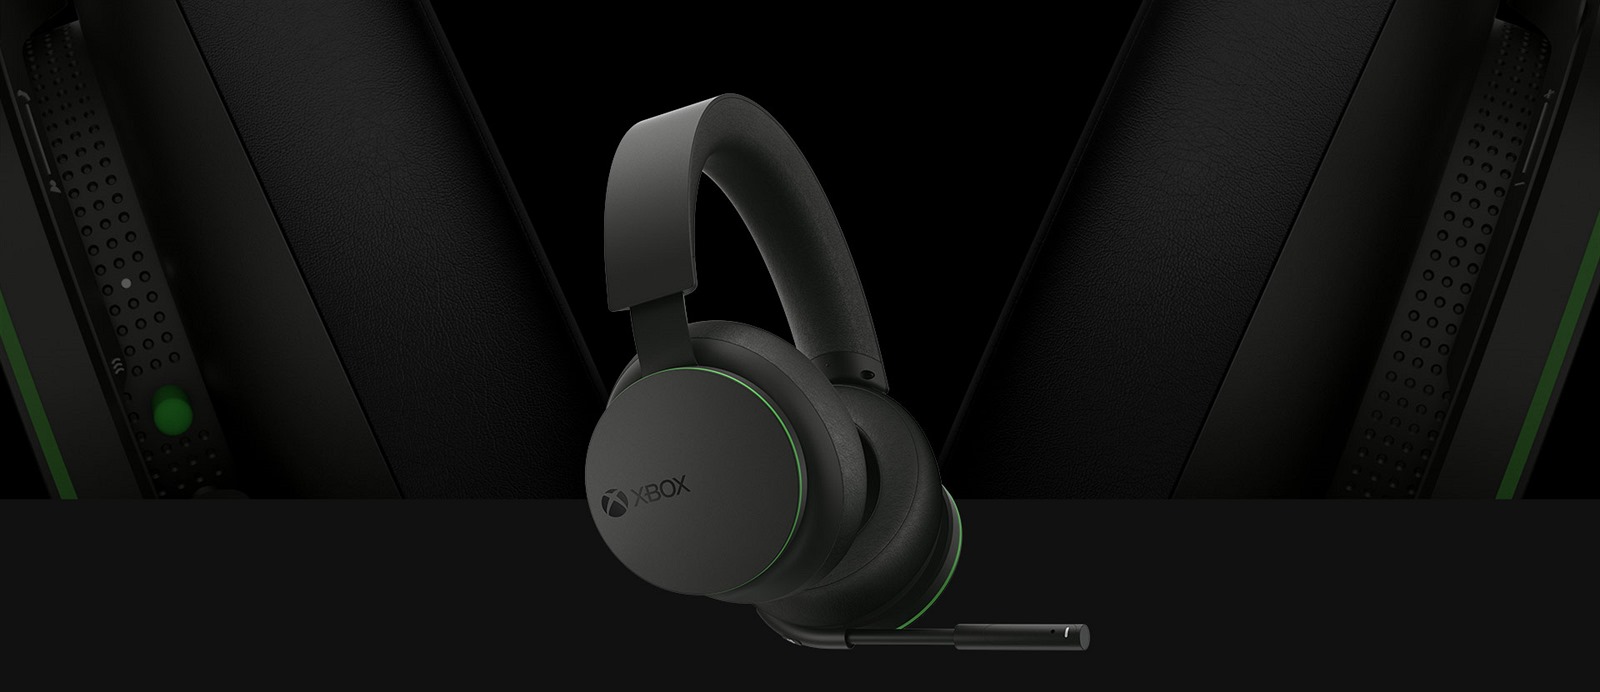 Microsoft představil bezdrátová sluchátka Xbox Wireless Headset - iDNES.cz